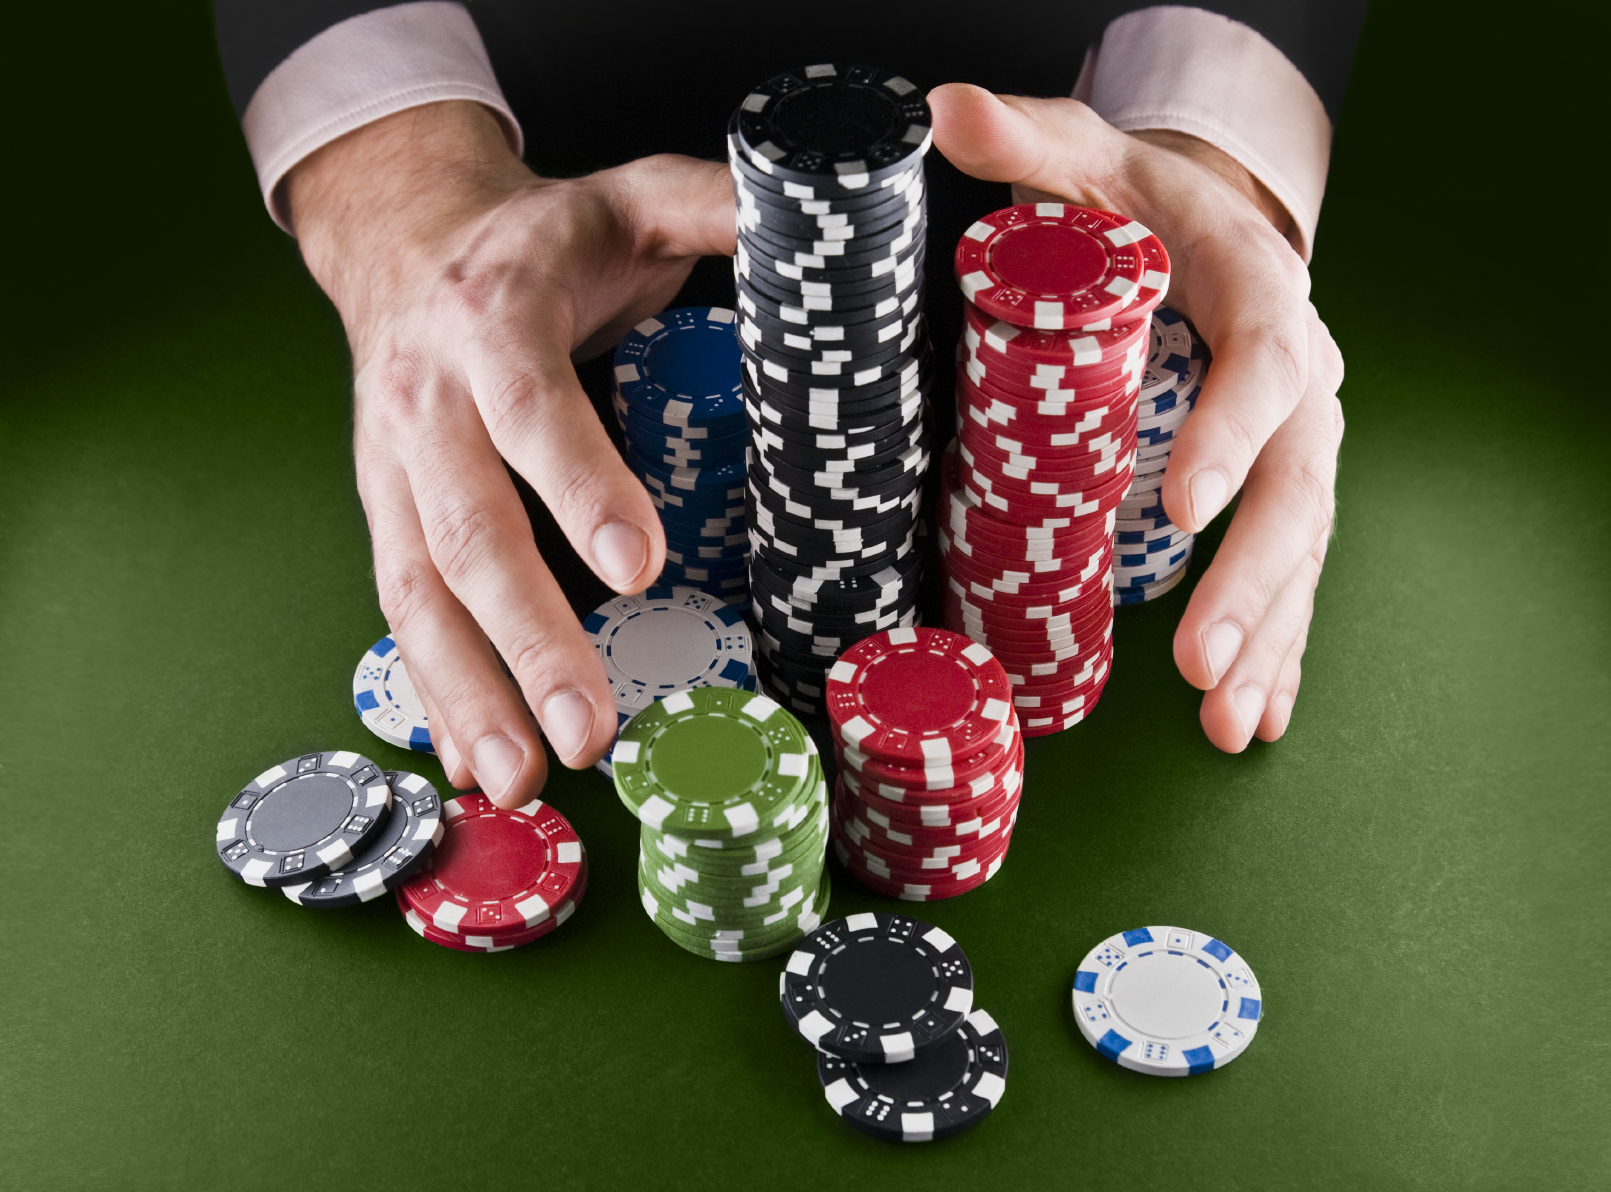 Марк Уортман, золотые правила покера, основные понятия, стратегия игры, пот в покере, пот, комбинации покера, игра в покер, Техасский холдем, правила игры, комбинации в покере, правила покера ,обучение, советы для начинающих 